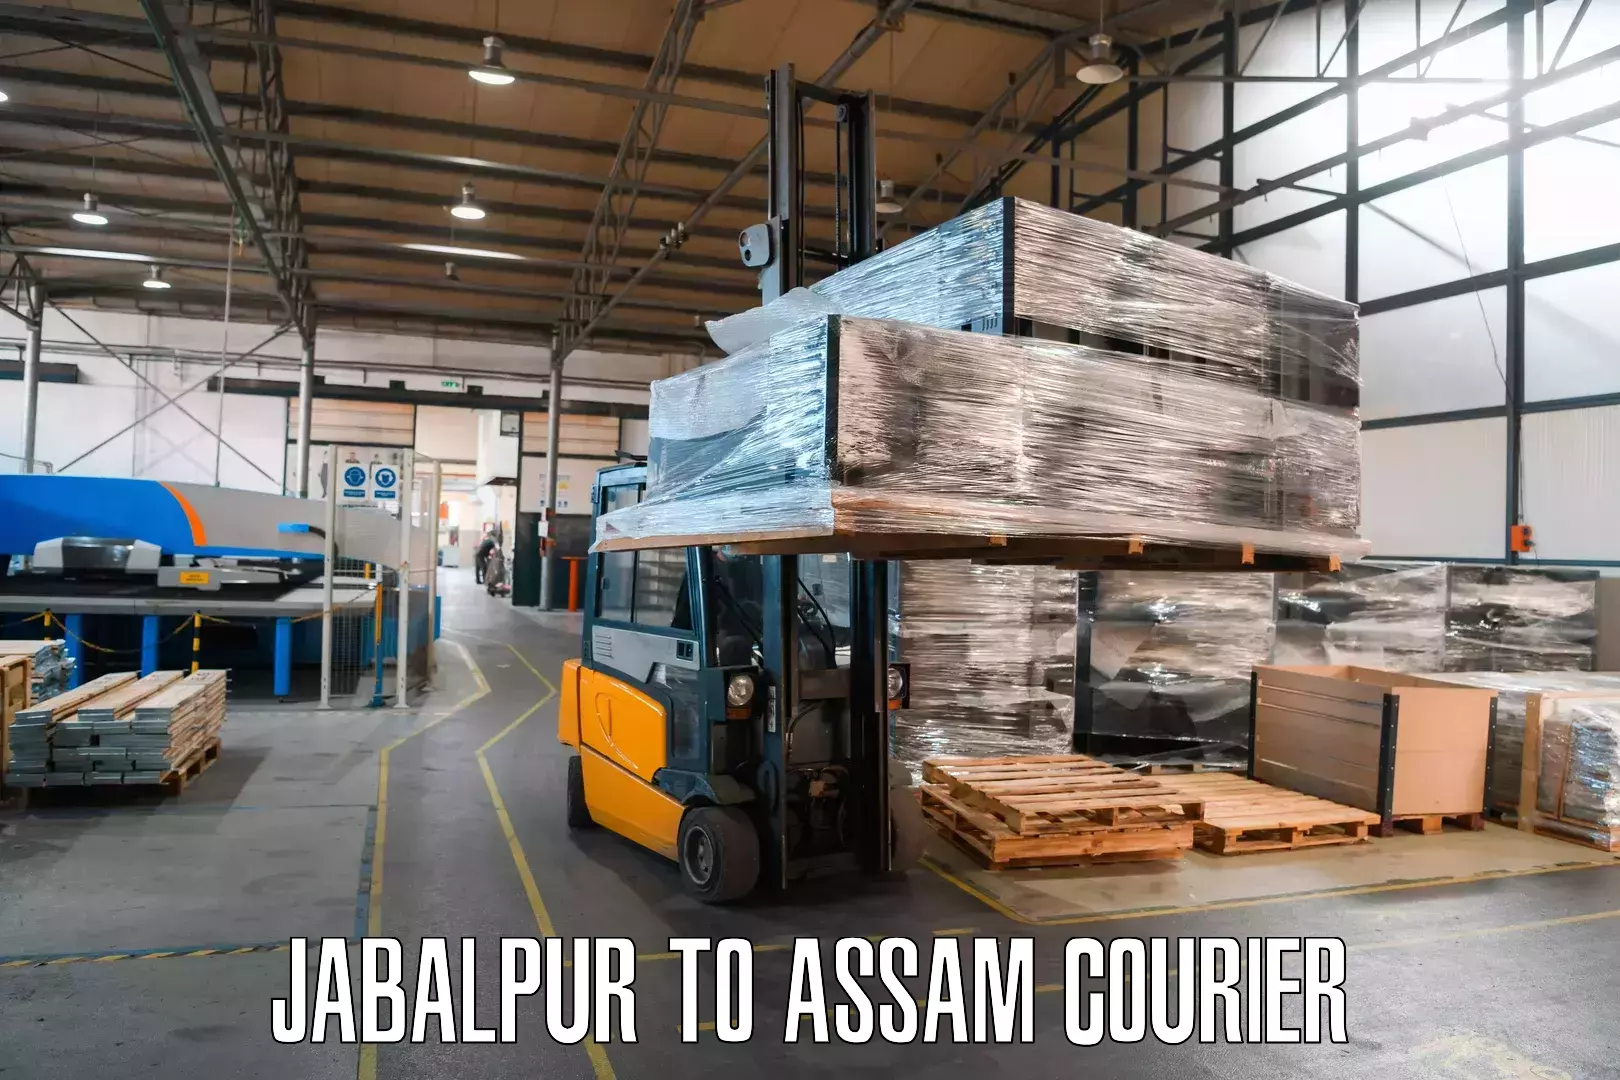 Multi-national courier services Jabalpur to Kalgachia